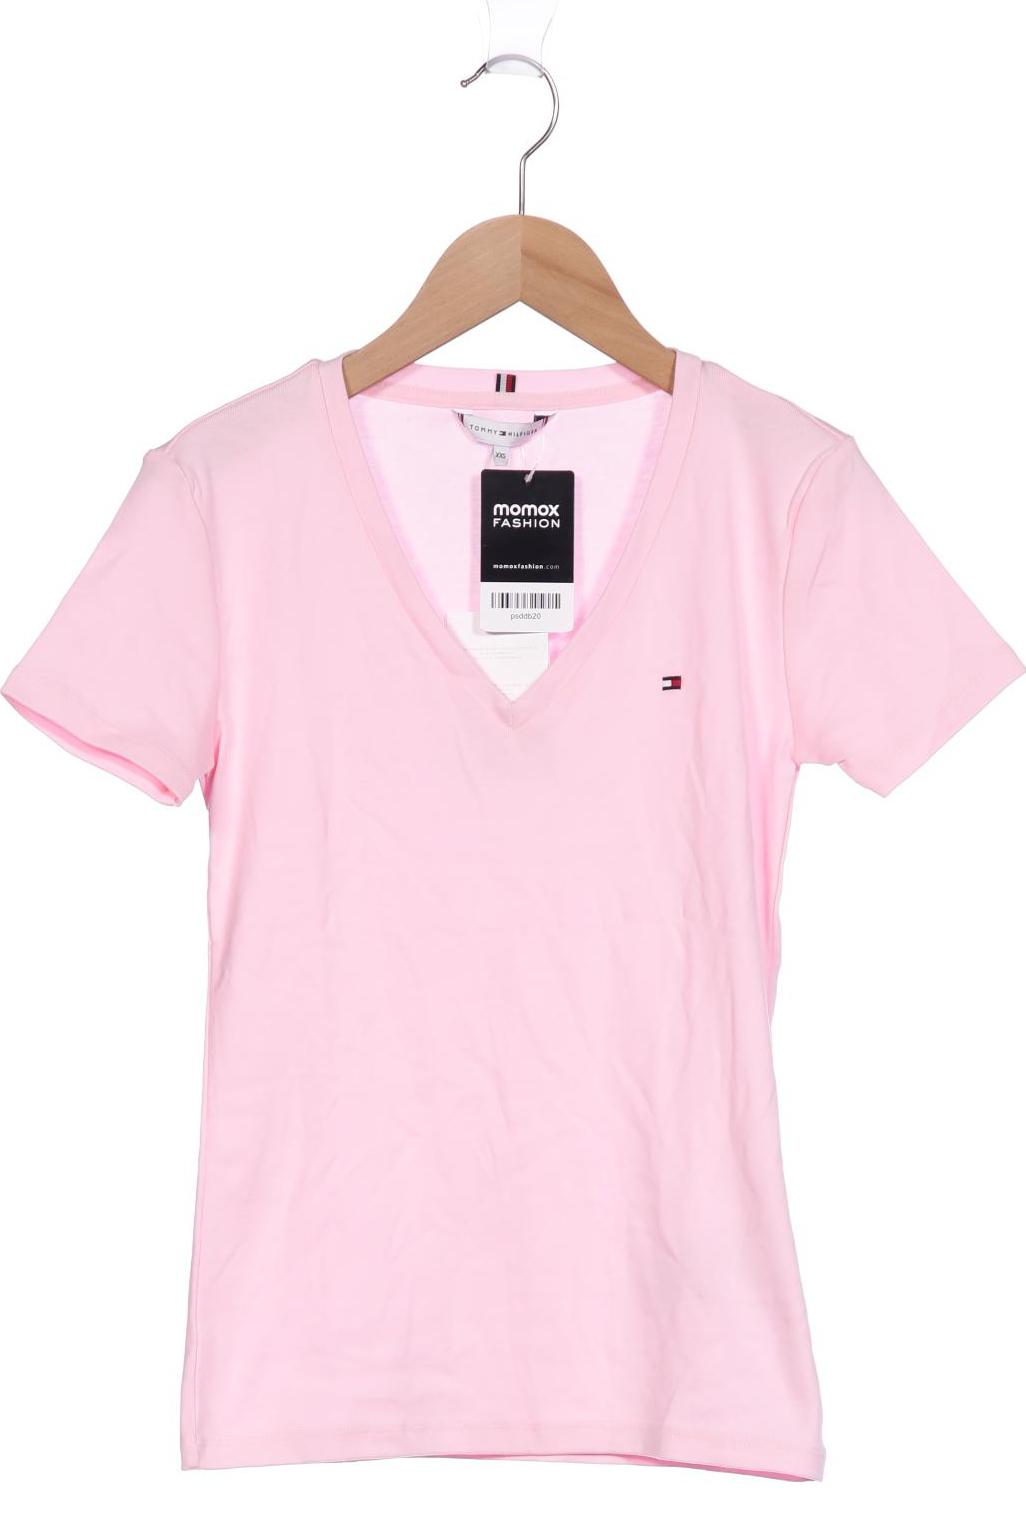 Tommy Hilfiger Damen T-Shirt, pink von Tommy Hilfiger